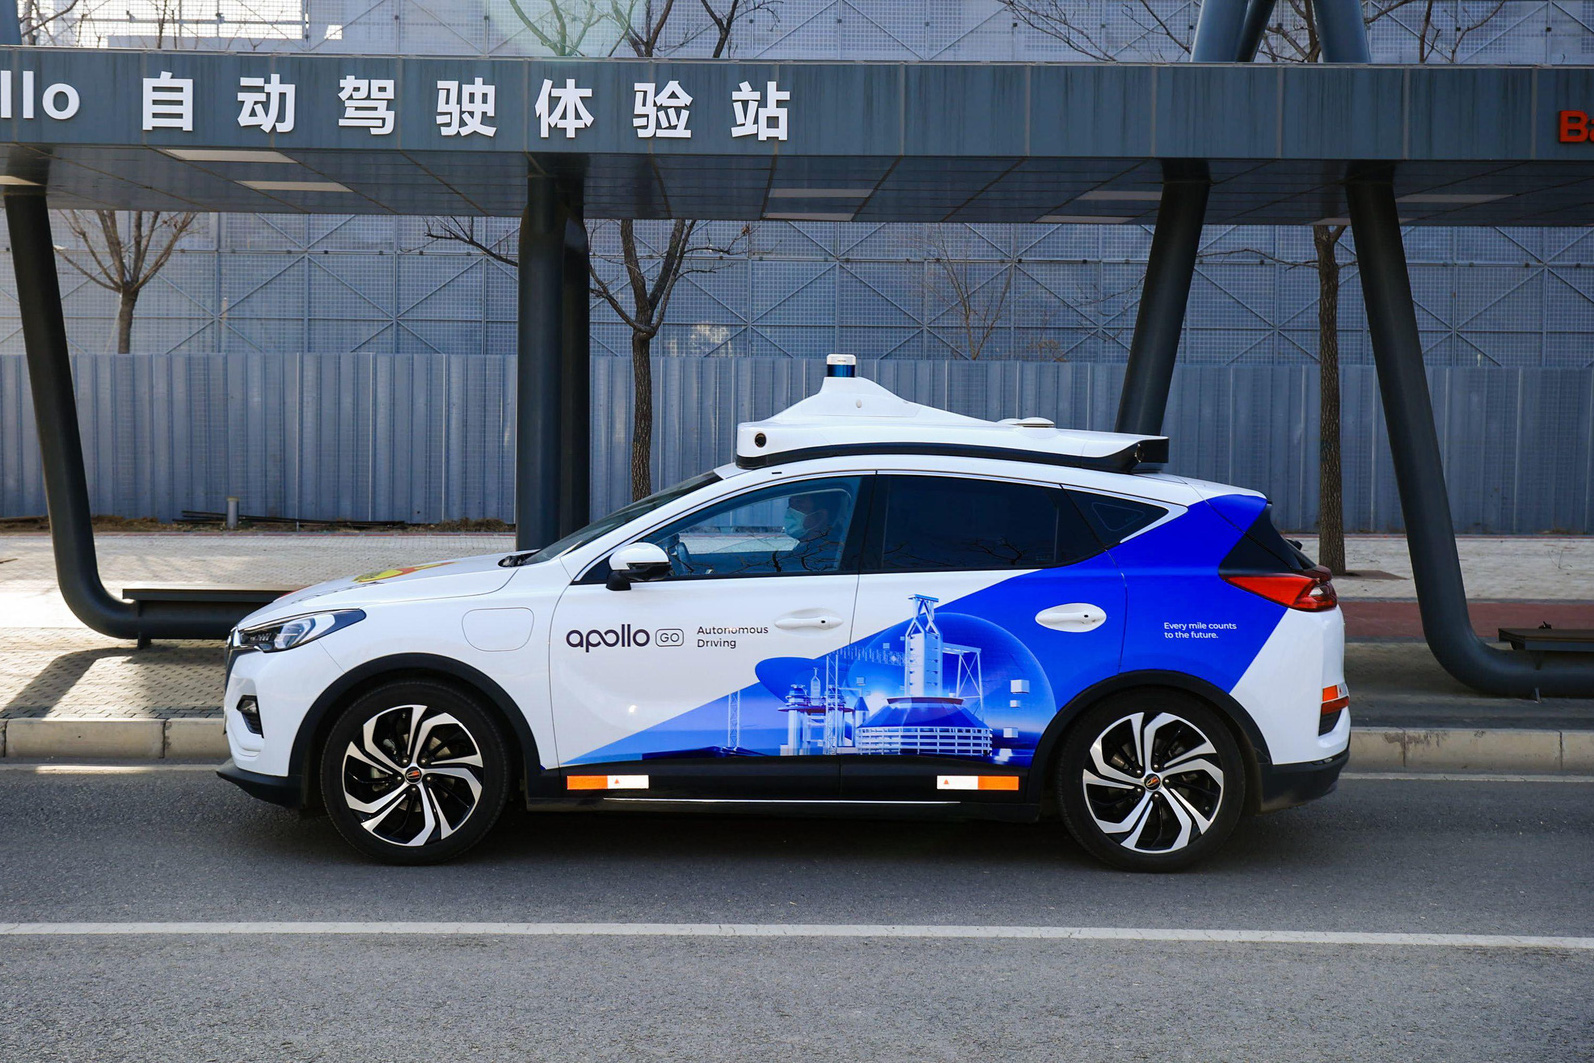 Trung Quốc dùng taxi tự lái cho Olympics Bắc Kinh 2022 để giảm nguy cơ Covid-19